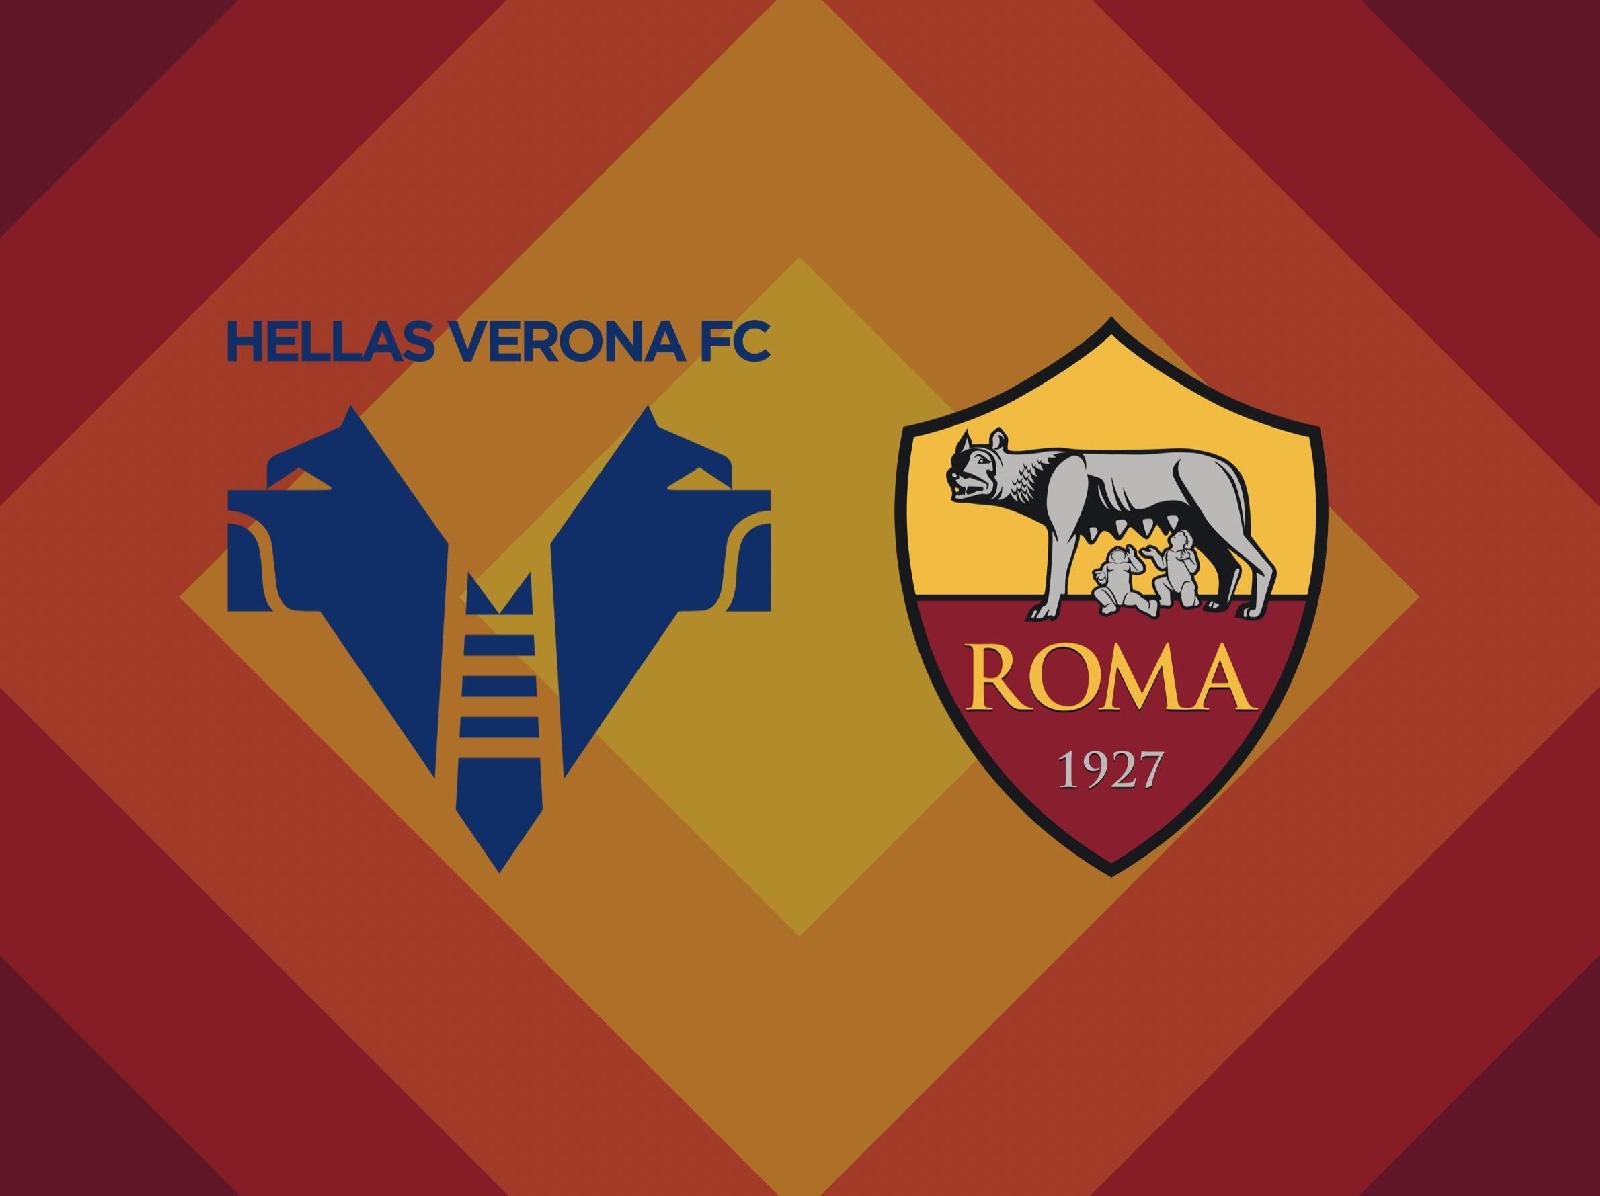 Le probabili formazioni di Hellas Verona-Roma